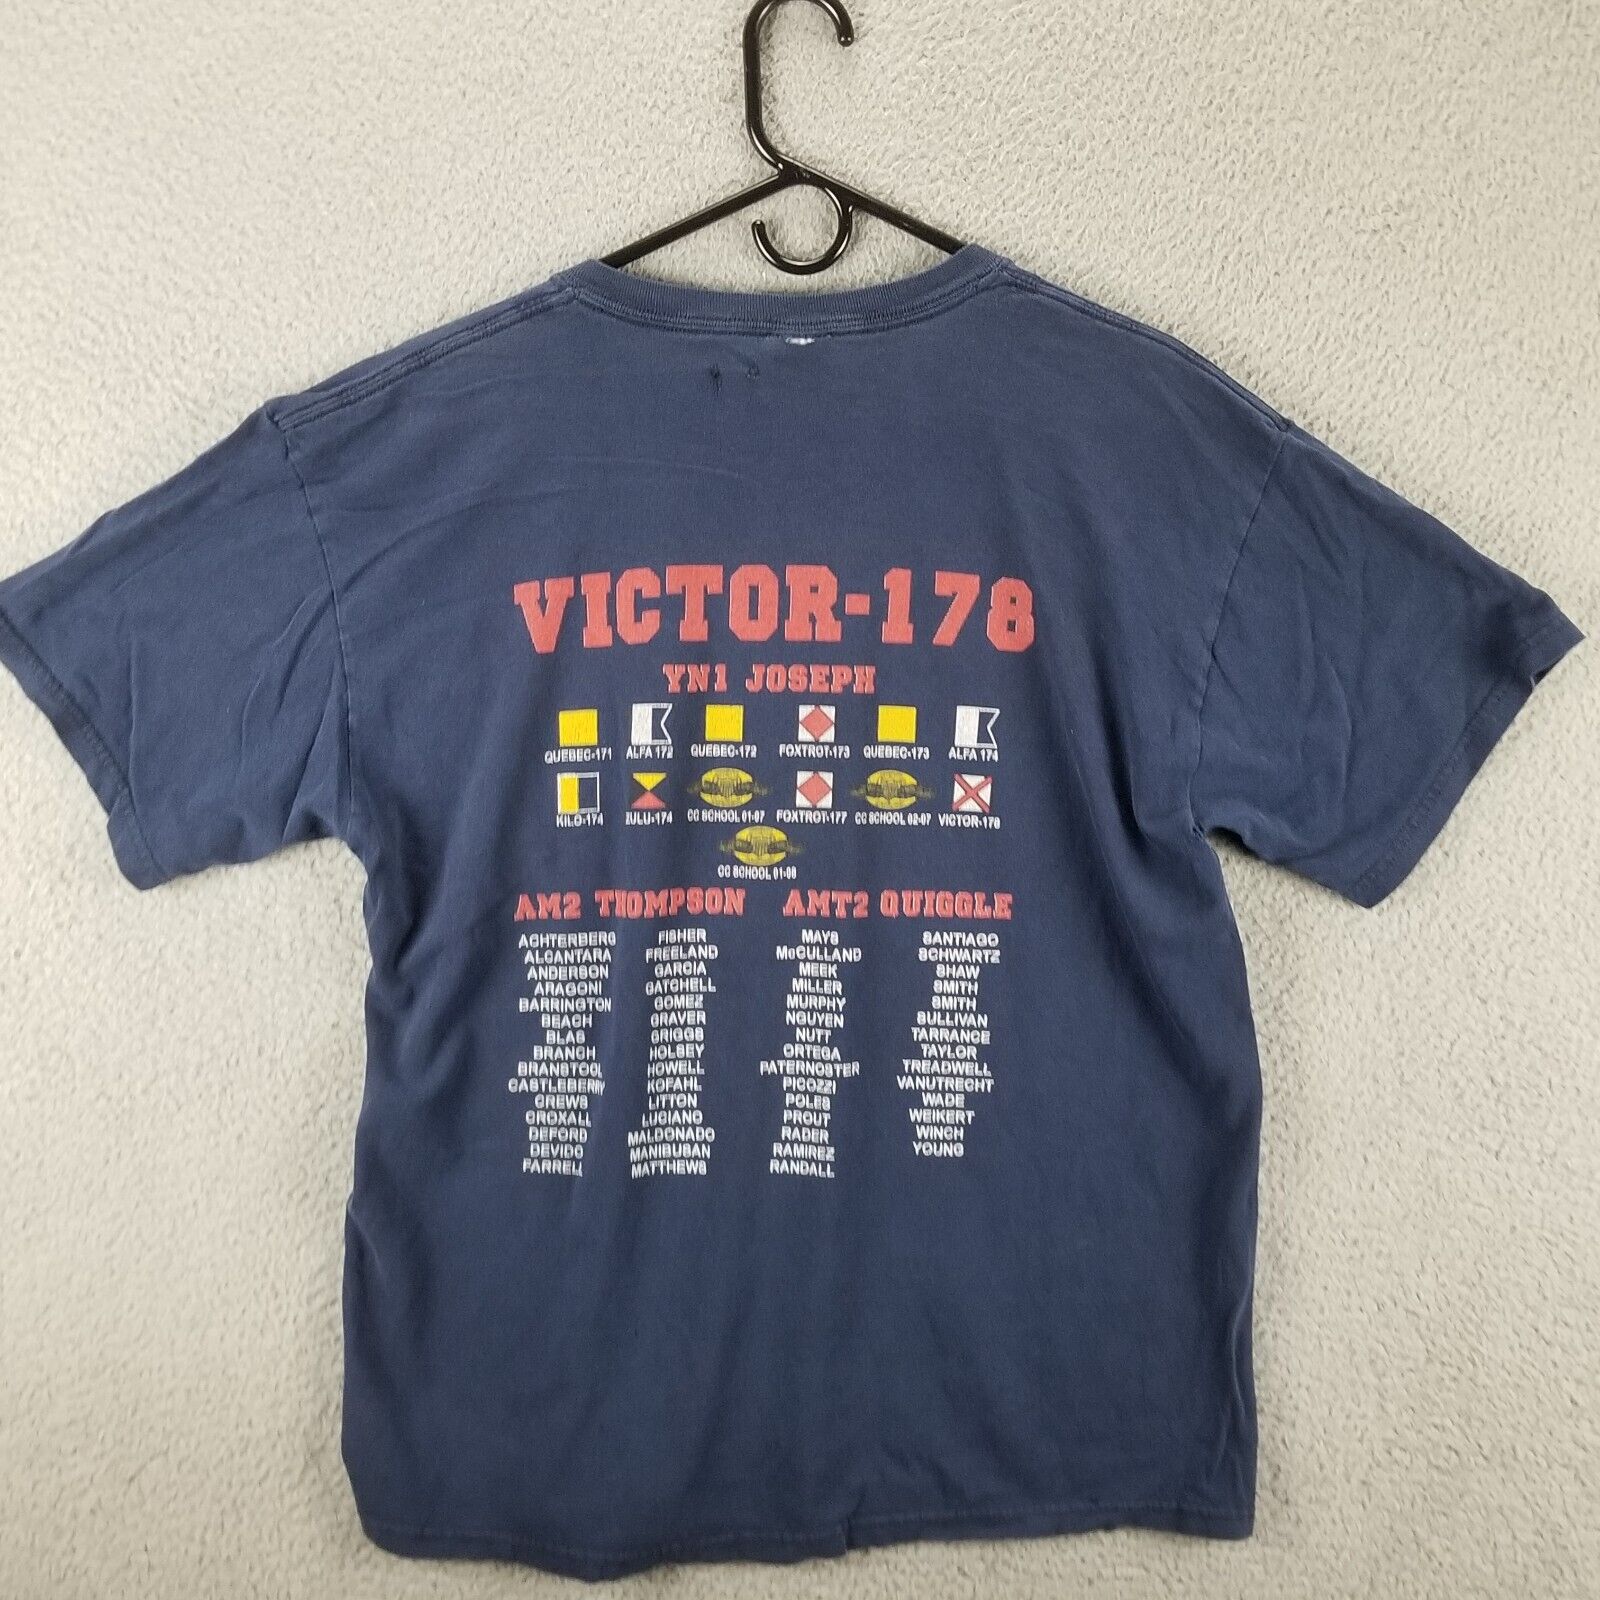 VTG US Coast Guard Shirt Large Victor -178 YN1 Joseph CC School Blue Flaw